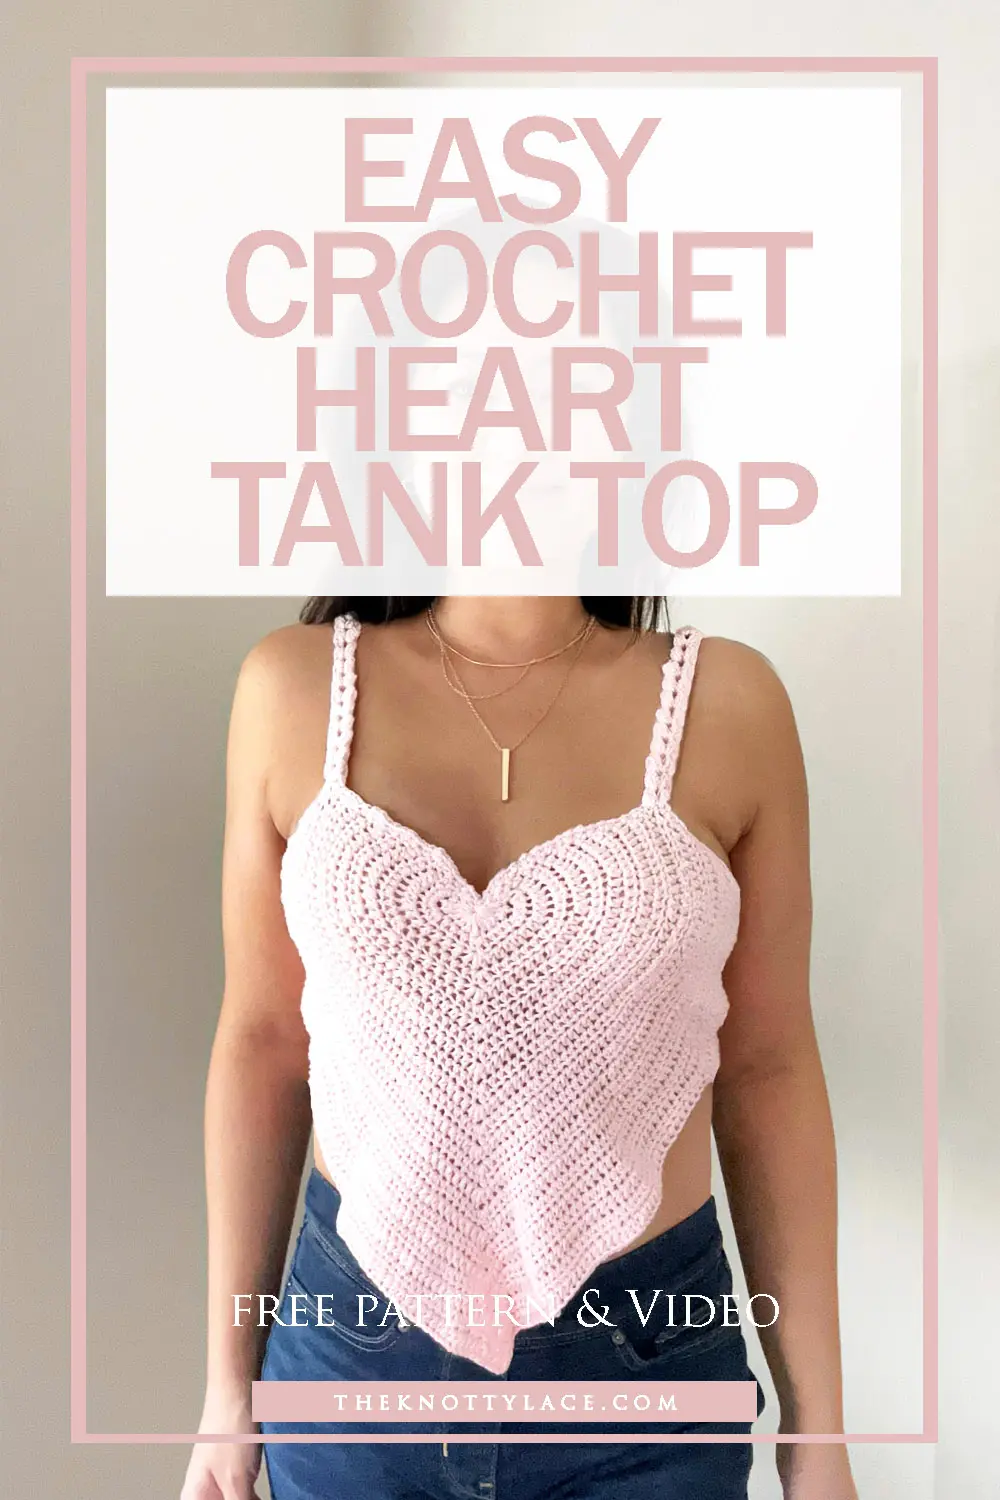 Easy Crochet Heart Tank Top Free Pattern & Video